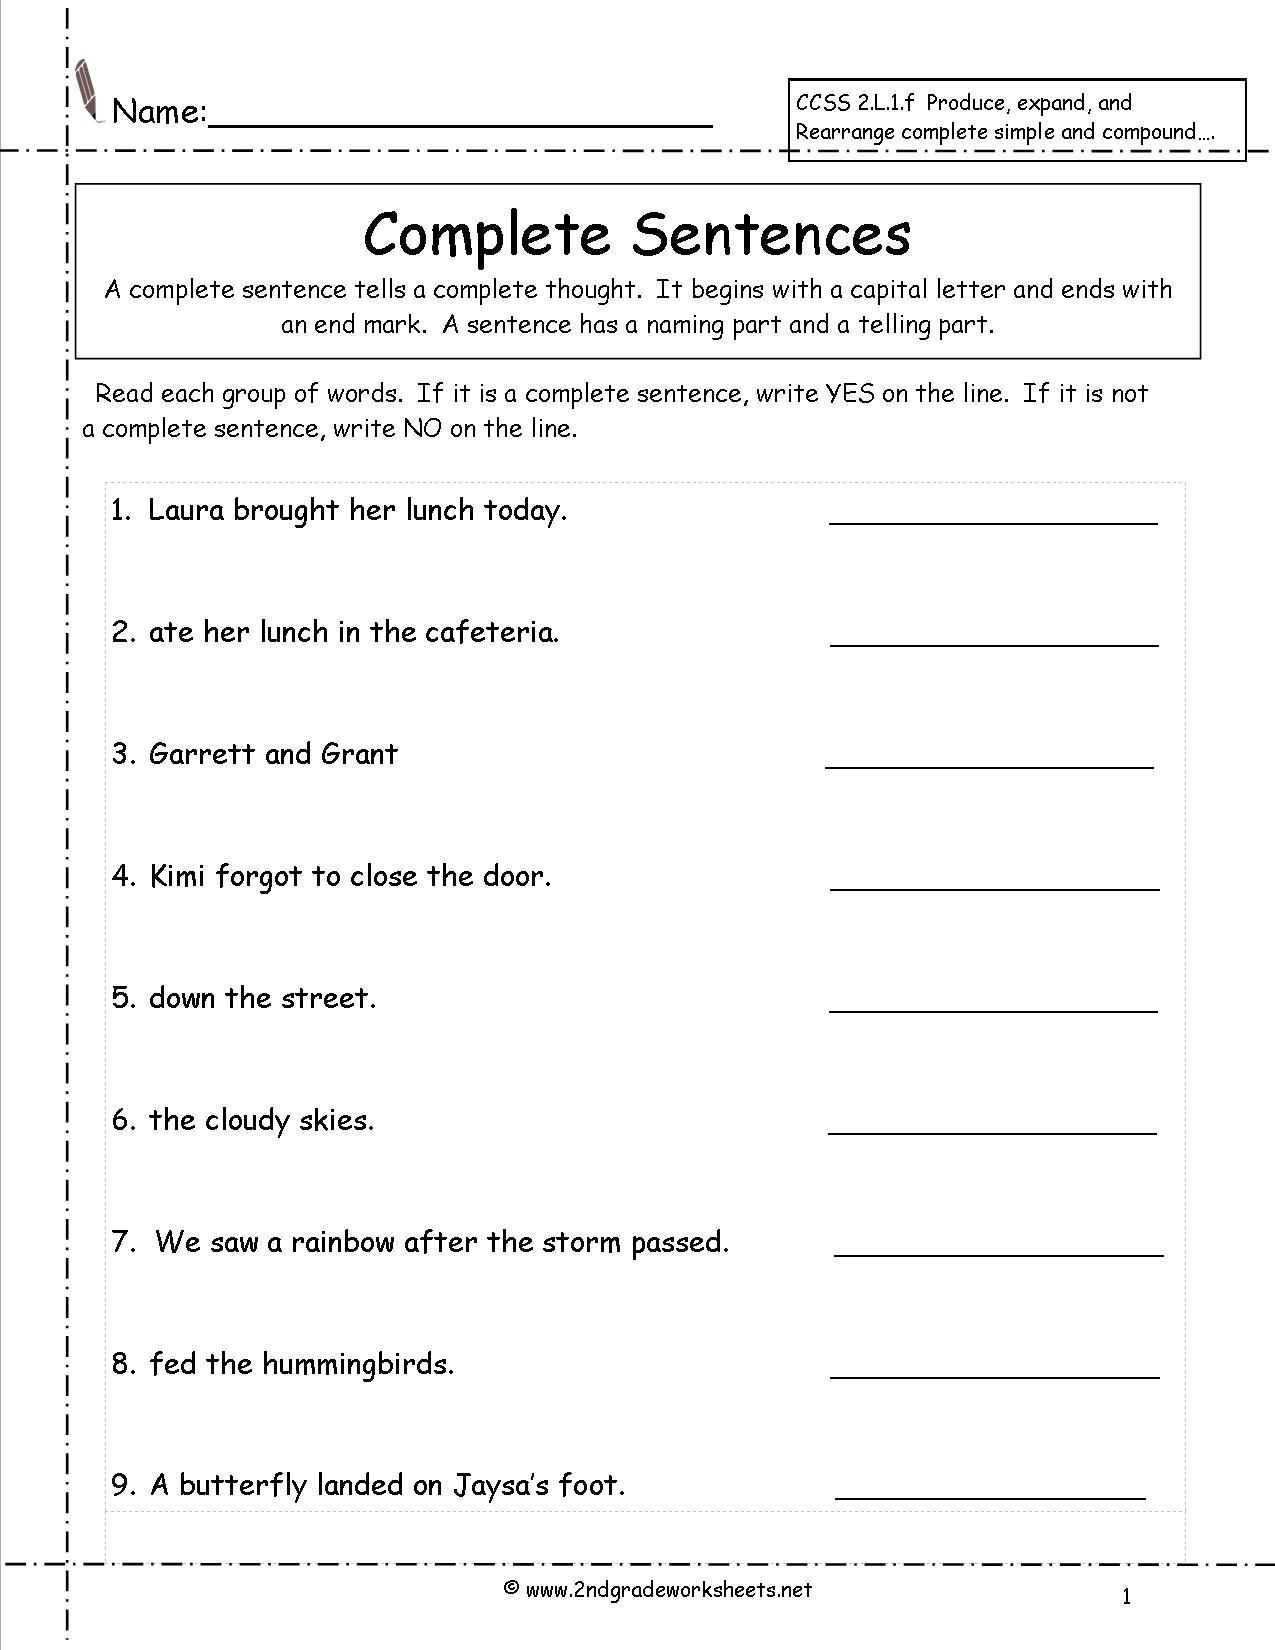 Complete Sentences Worksheets 3rd Grade Second Grade Sentences Worksheets Ccss 2 L 1 F Worksheets